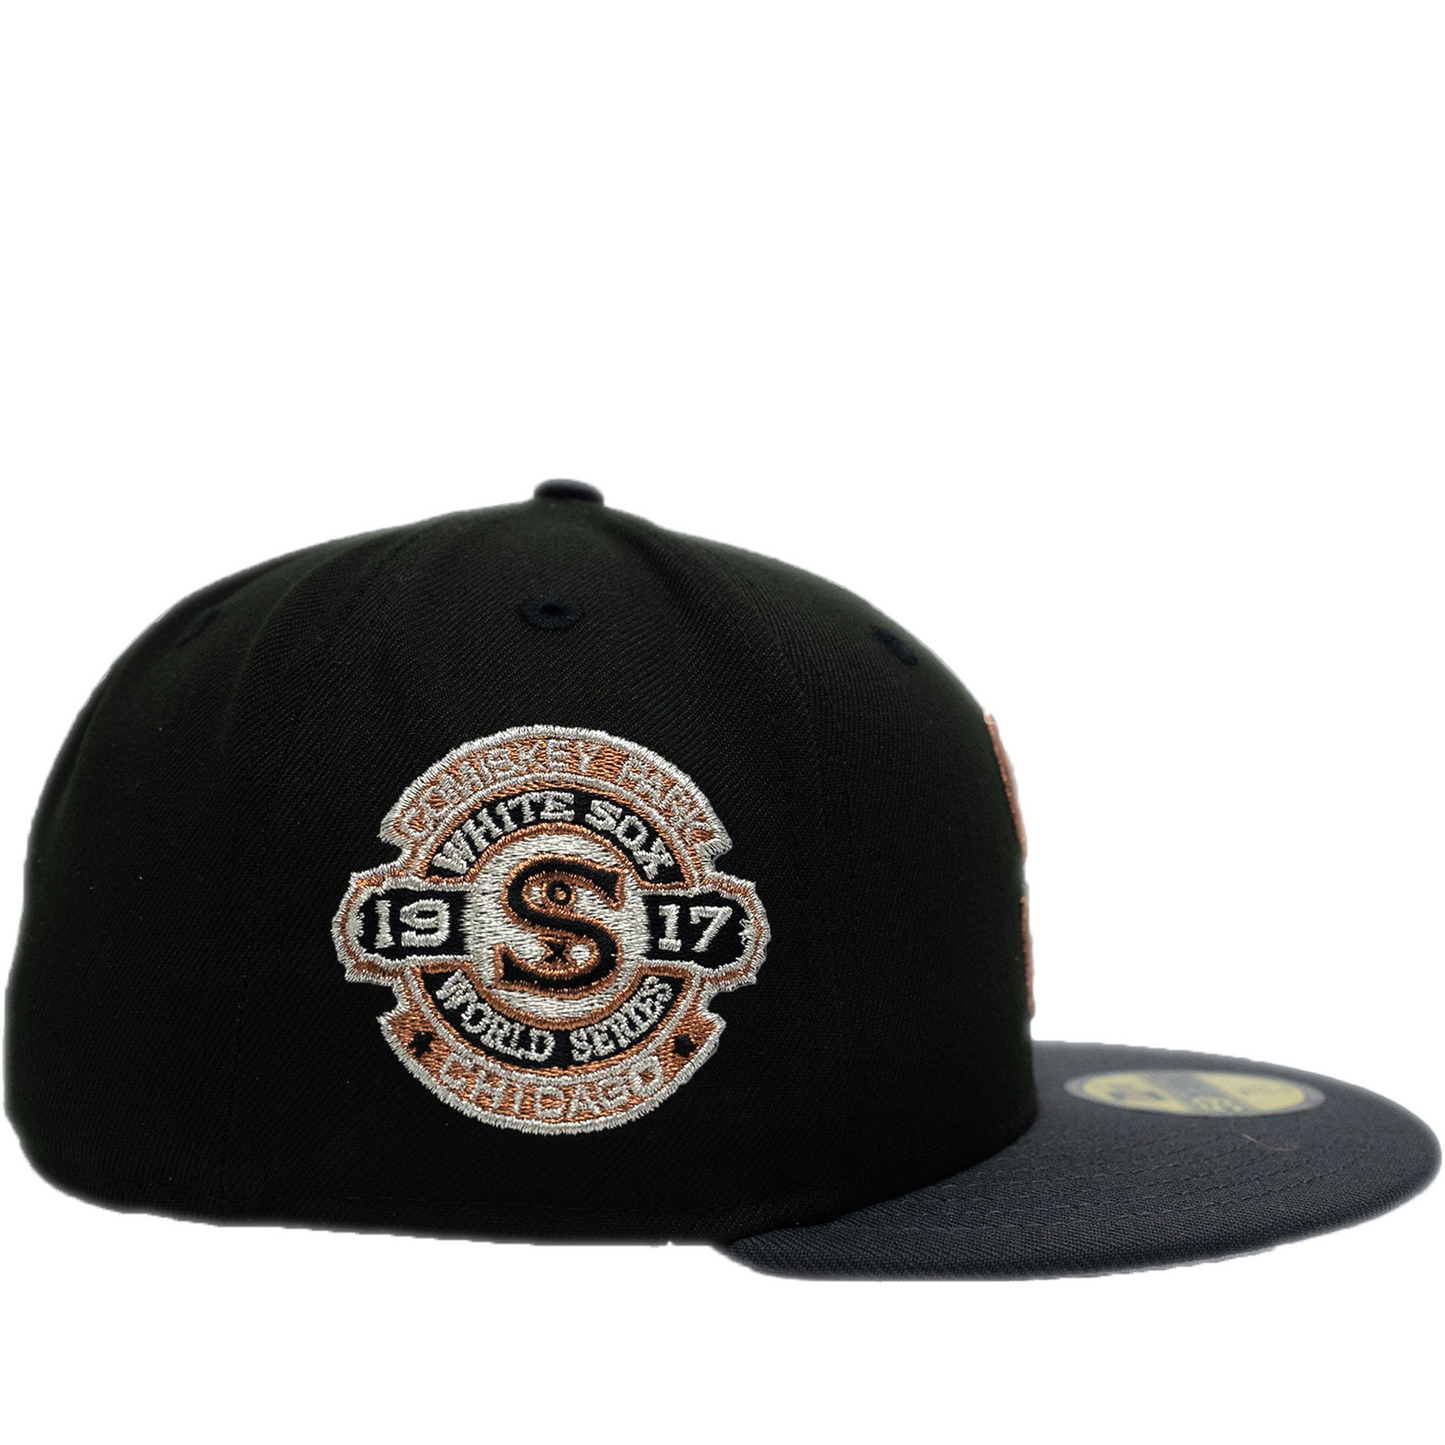 New Era Chicago White Sox 59FIFTY Hat - Black/ Graphite